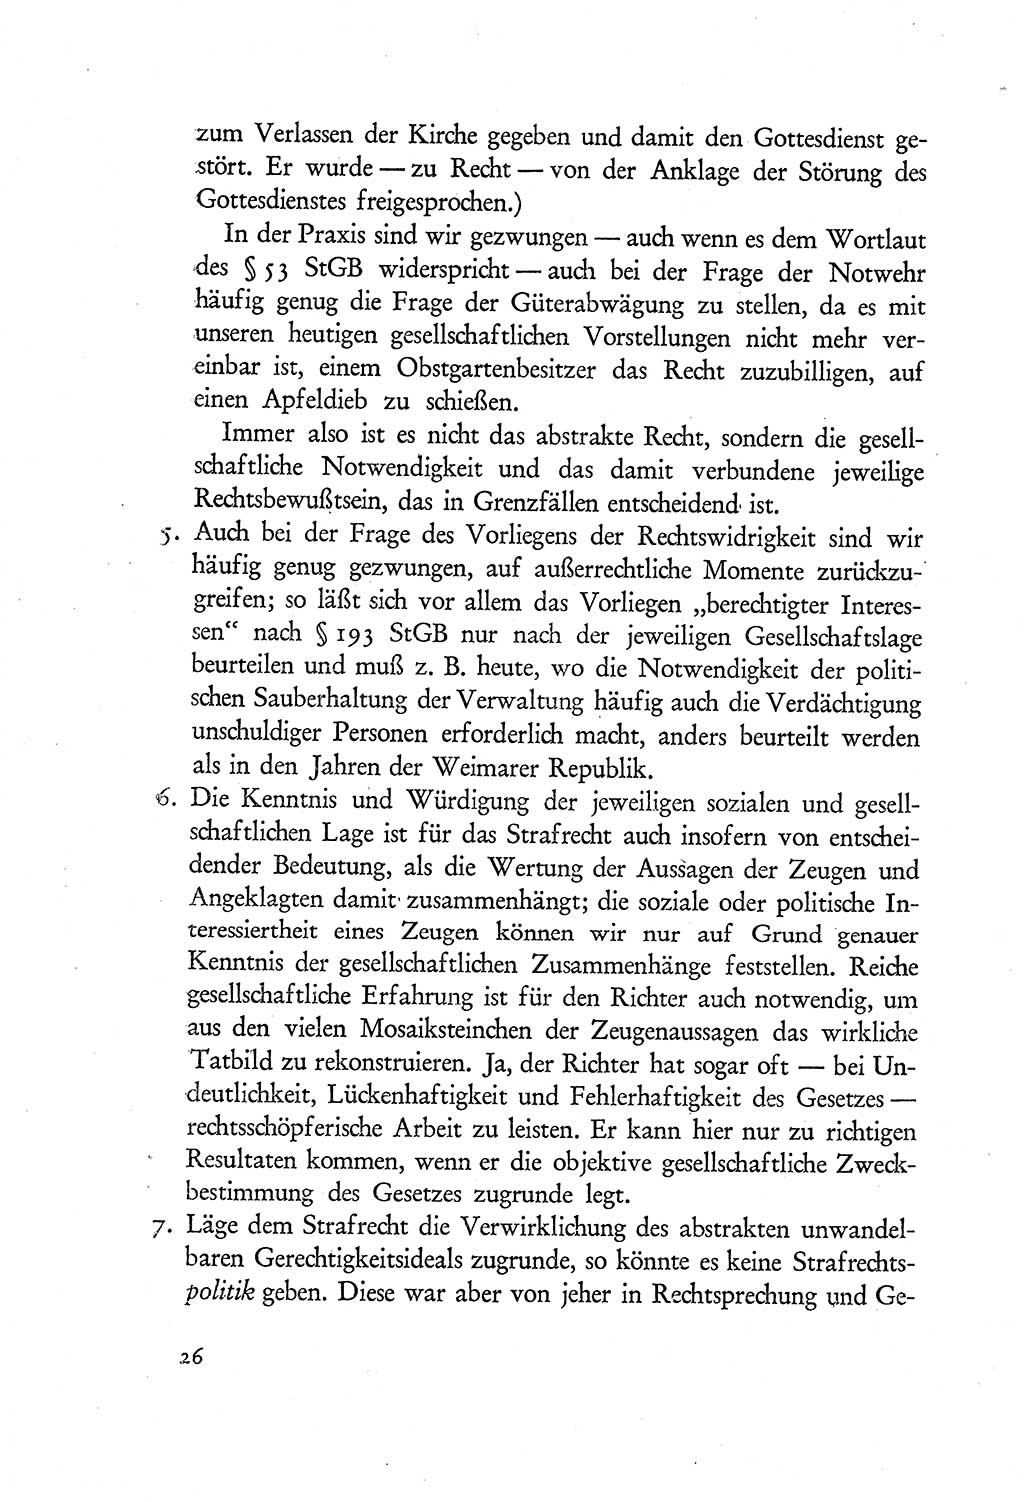 Probleme eines demokratischen Strafrechts [Sowjetische Besatzungszone (SBZ) Deutschlands] 1949, Seite 26 (Probl. Strafr. SBZ Dtl. 1949, S. 26)